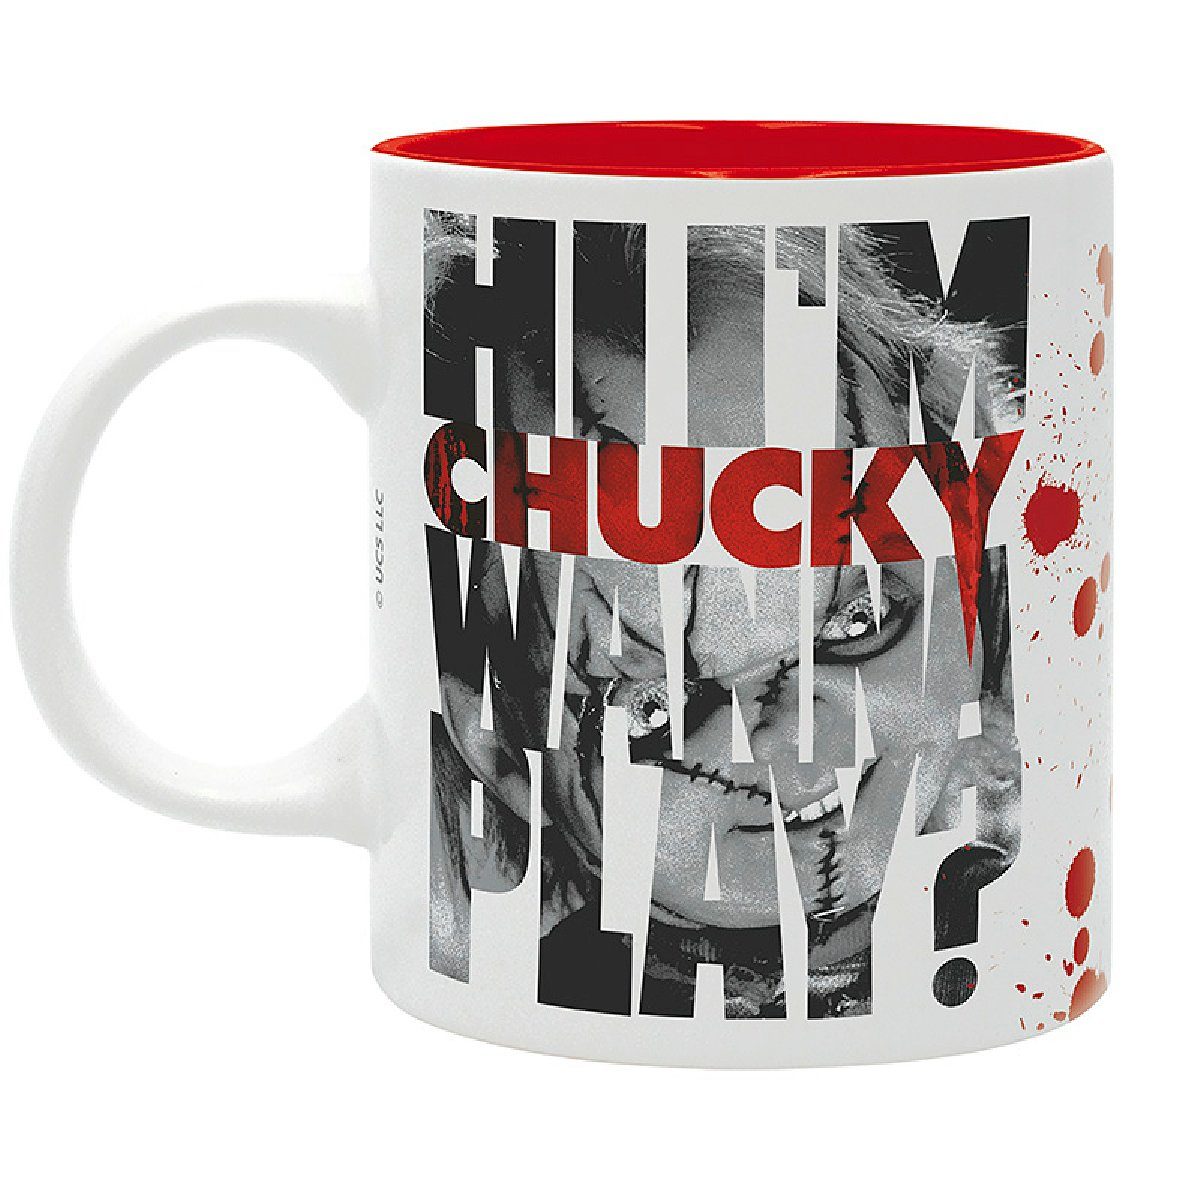 ABYstyle Chucky Play Wanna Tasse Tasse